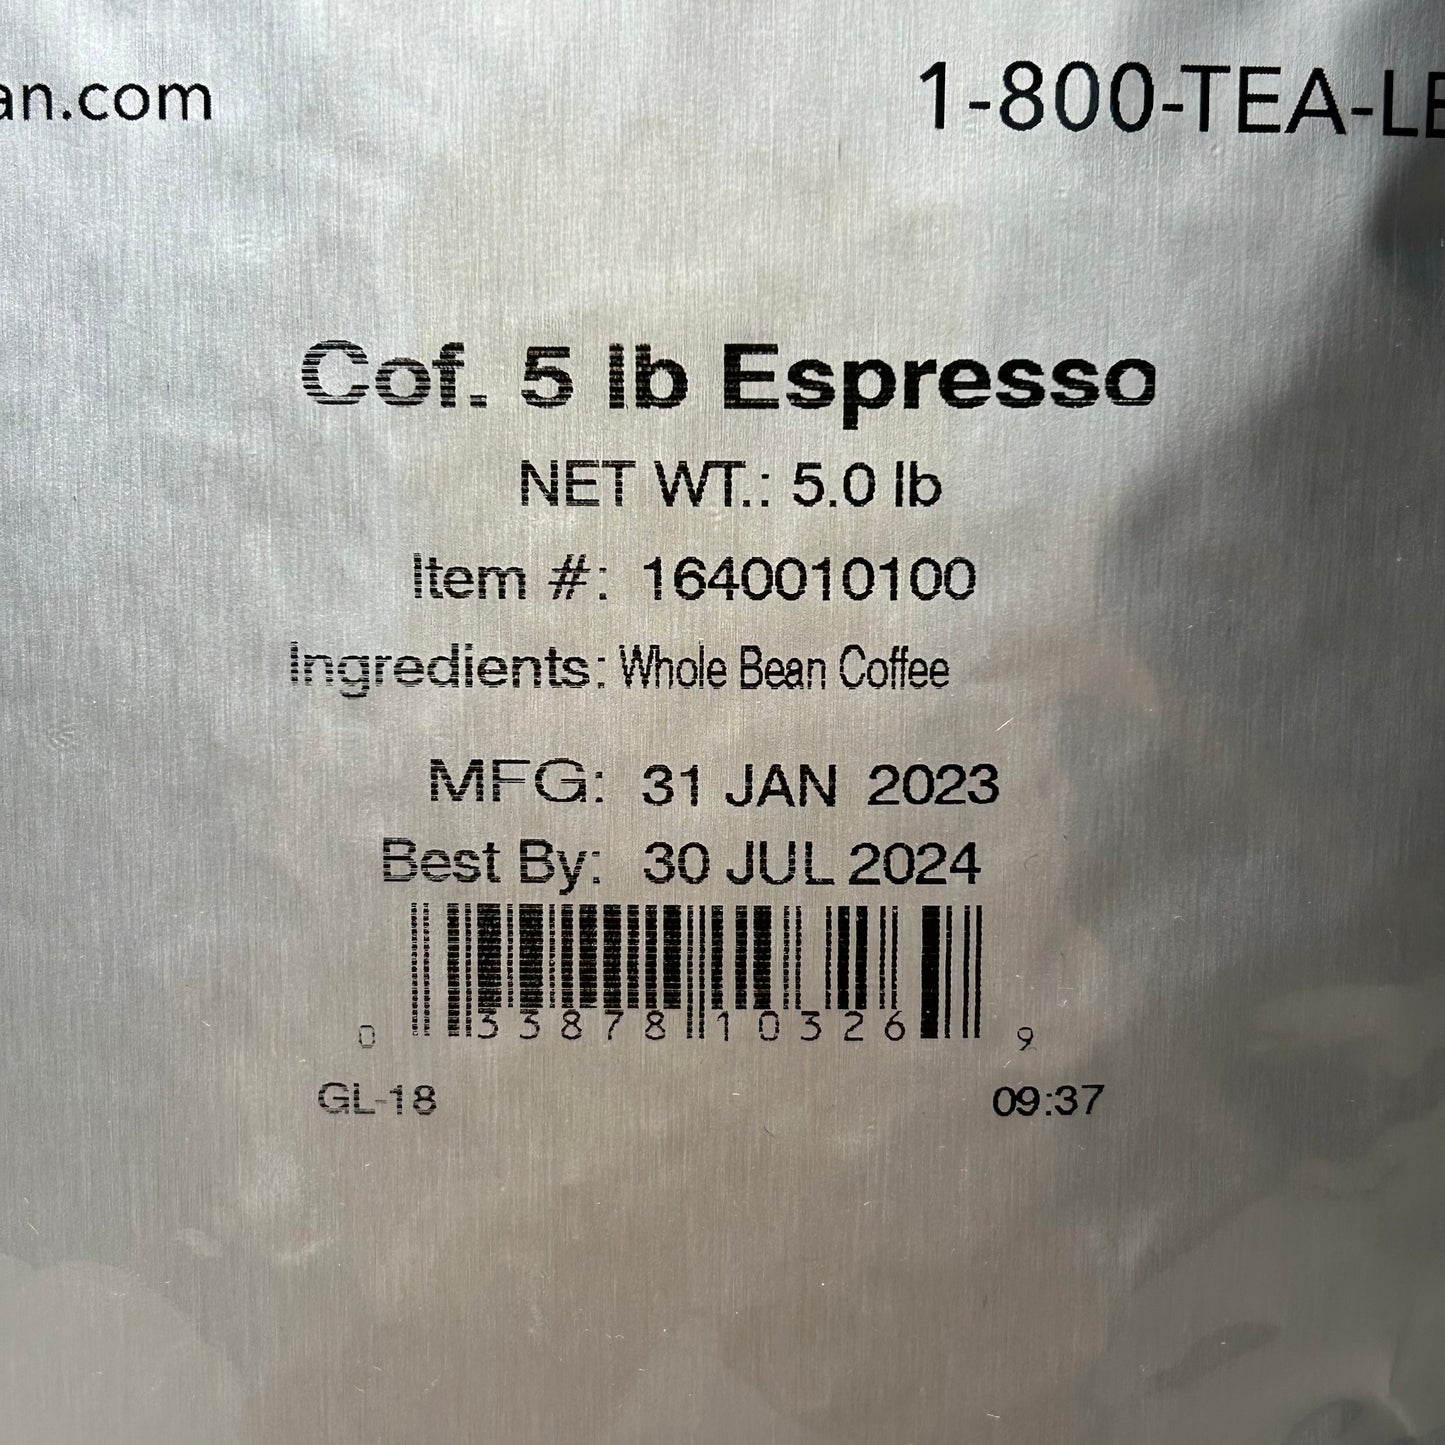 THE COFFEE BEAN & TEA LEAF 2-PACK! Espresso Whole Bean Coffee 5 lbs each (New)